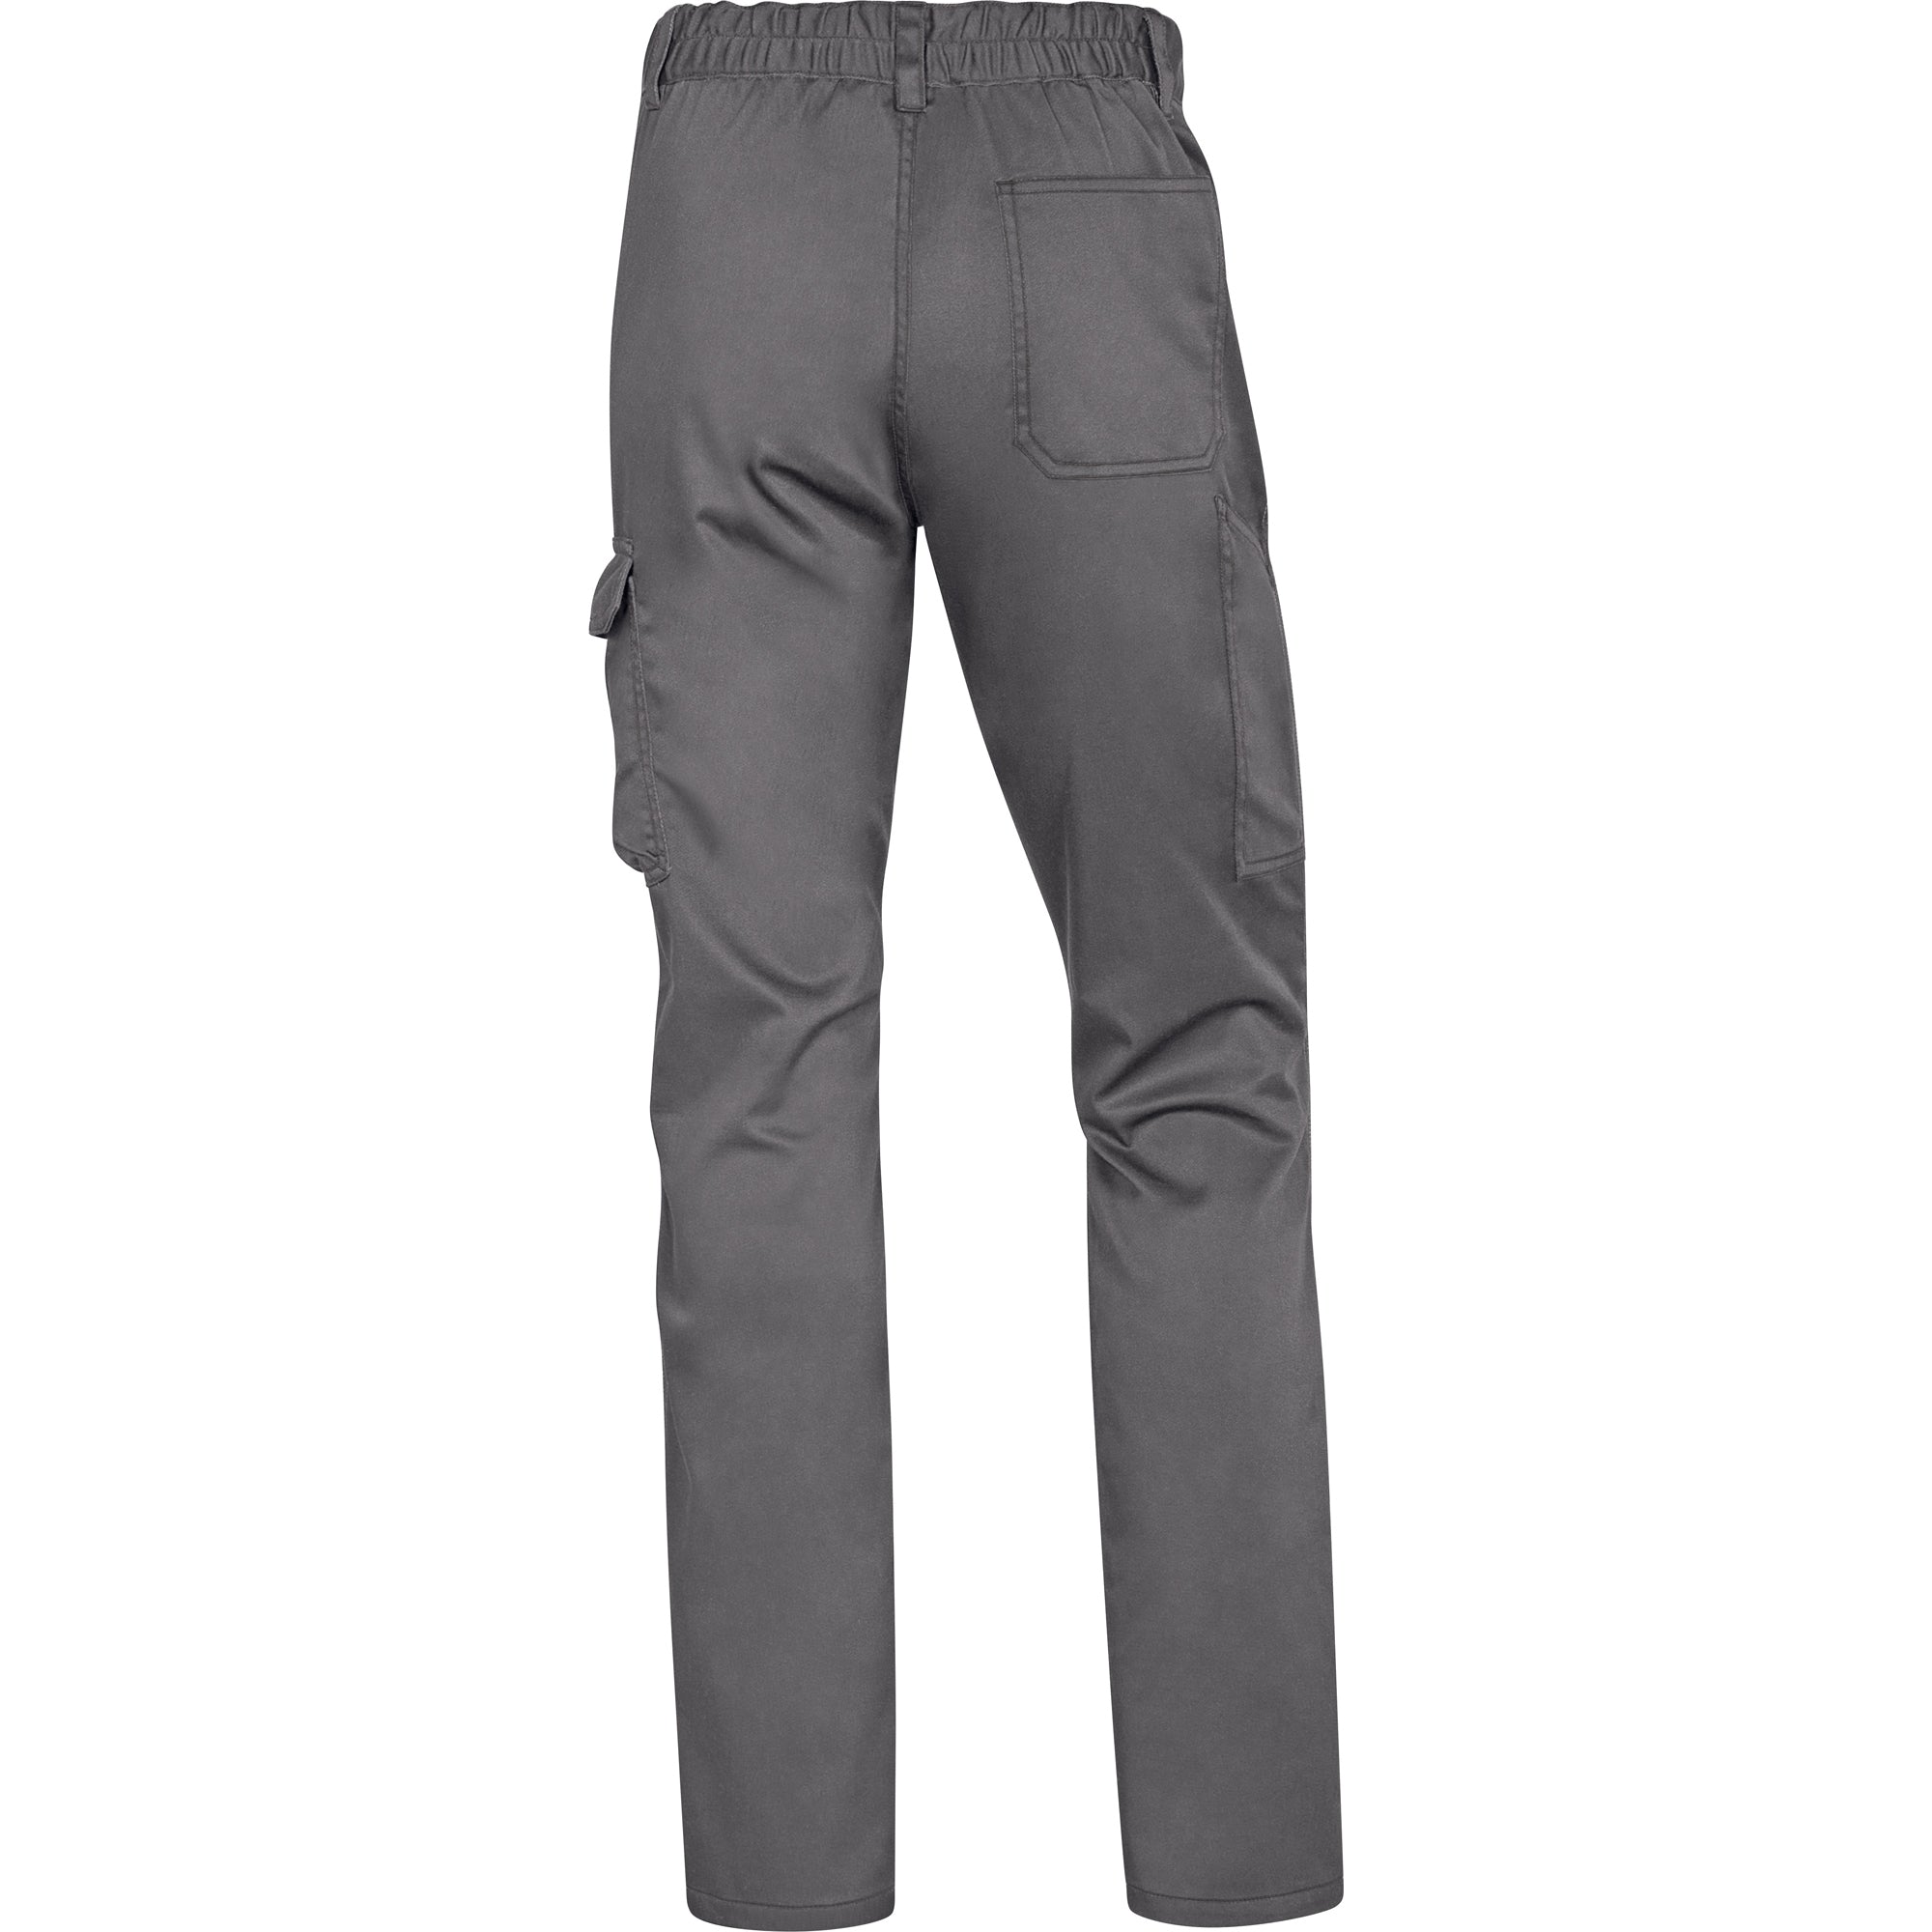 deltaplus-pantalone-lavoro-panostrpa-tg-l-grigio-nero